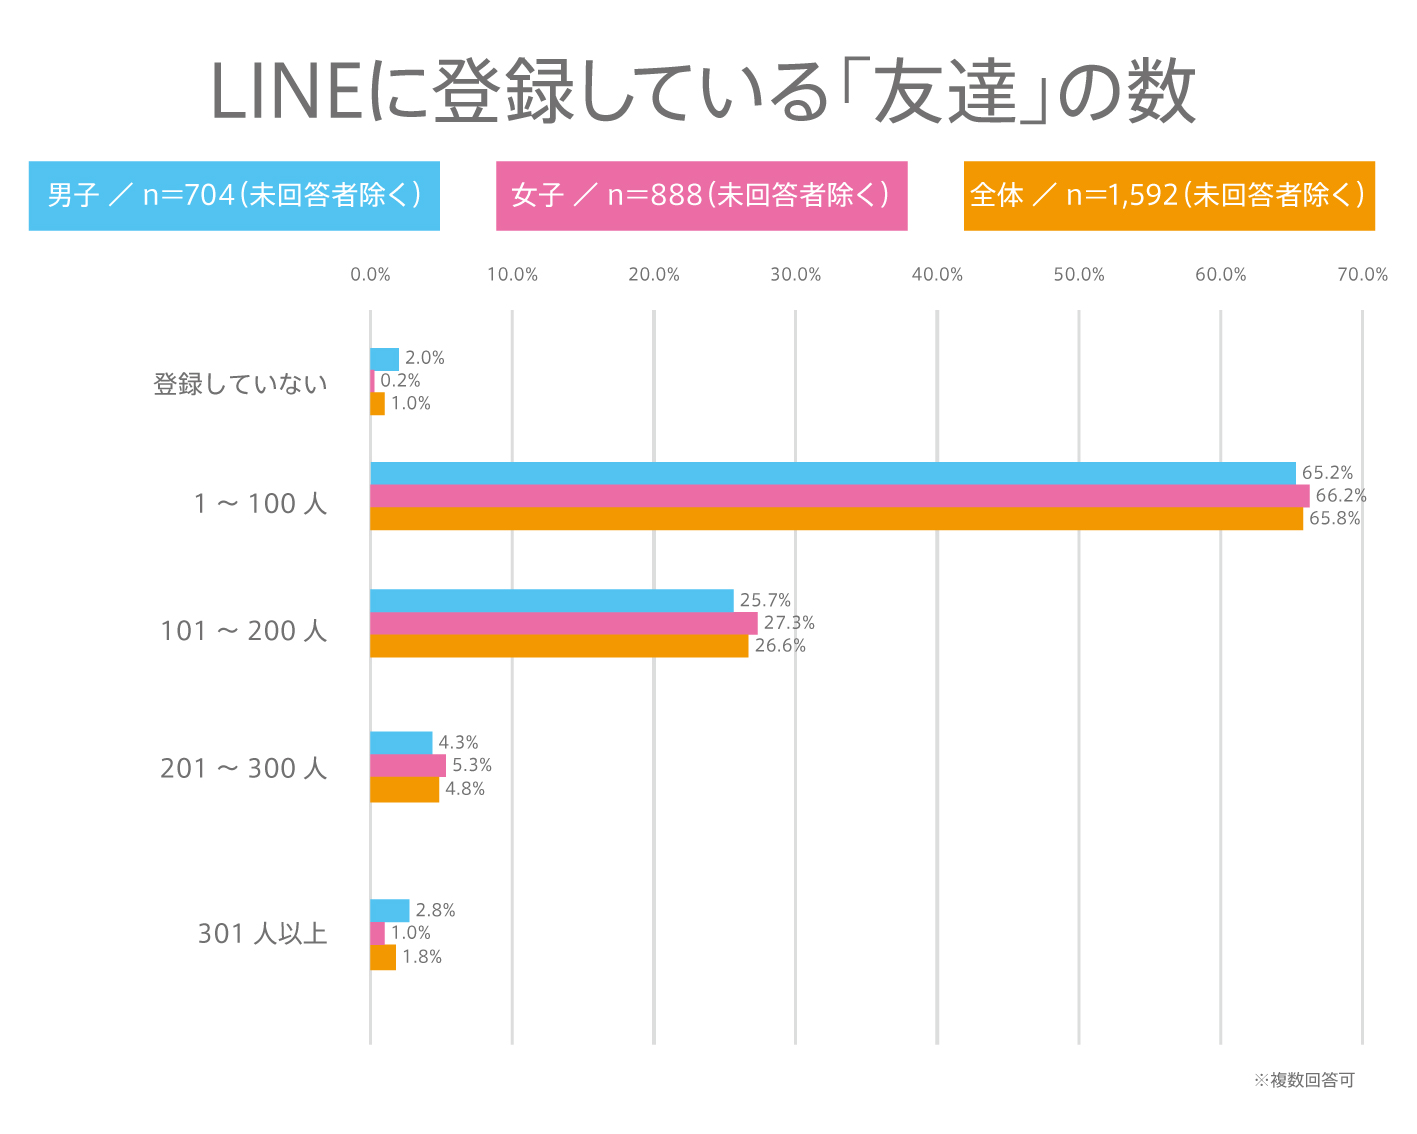 昨年の2018年6月4日に公開した同内容のアンケート（https://www.ytjp.jp/2018/06/05/1000ninanketo-LINEriyou）と比較すると、 友達登録数、グループ数共に、最も多いゾーンに変化は無かったが、友達登録数「100人以下」の割合は約9%UP、グループ数 「10グループ以下」の割合は約3%UPした。